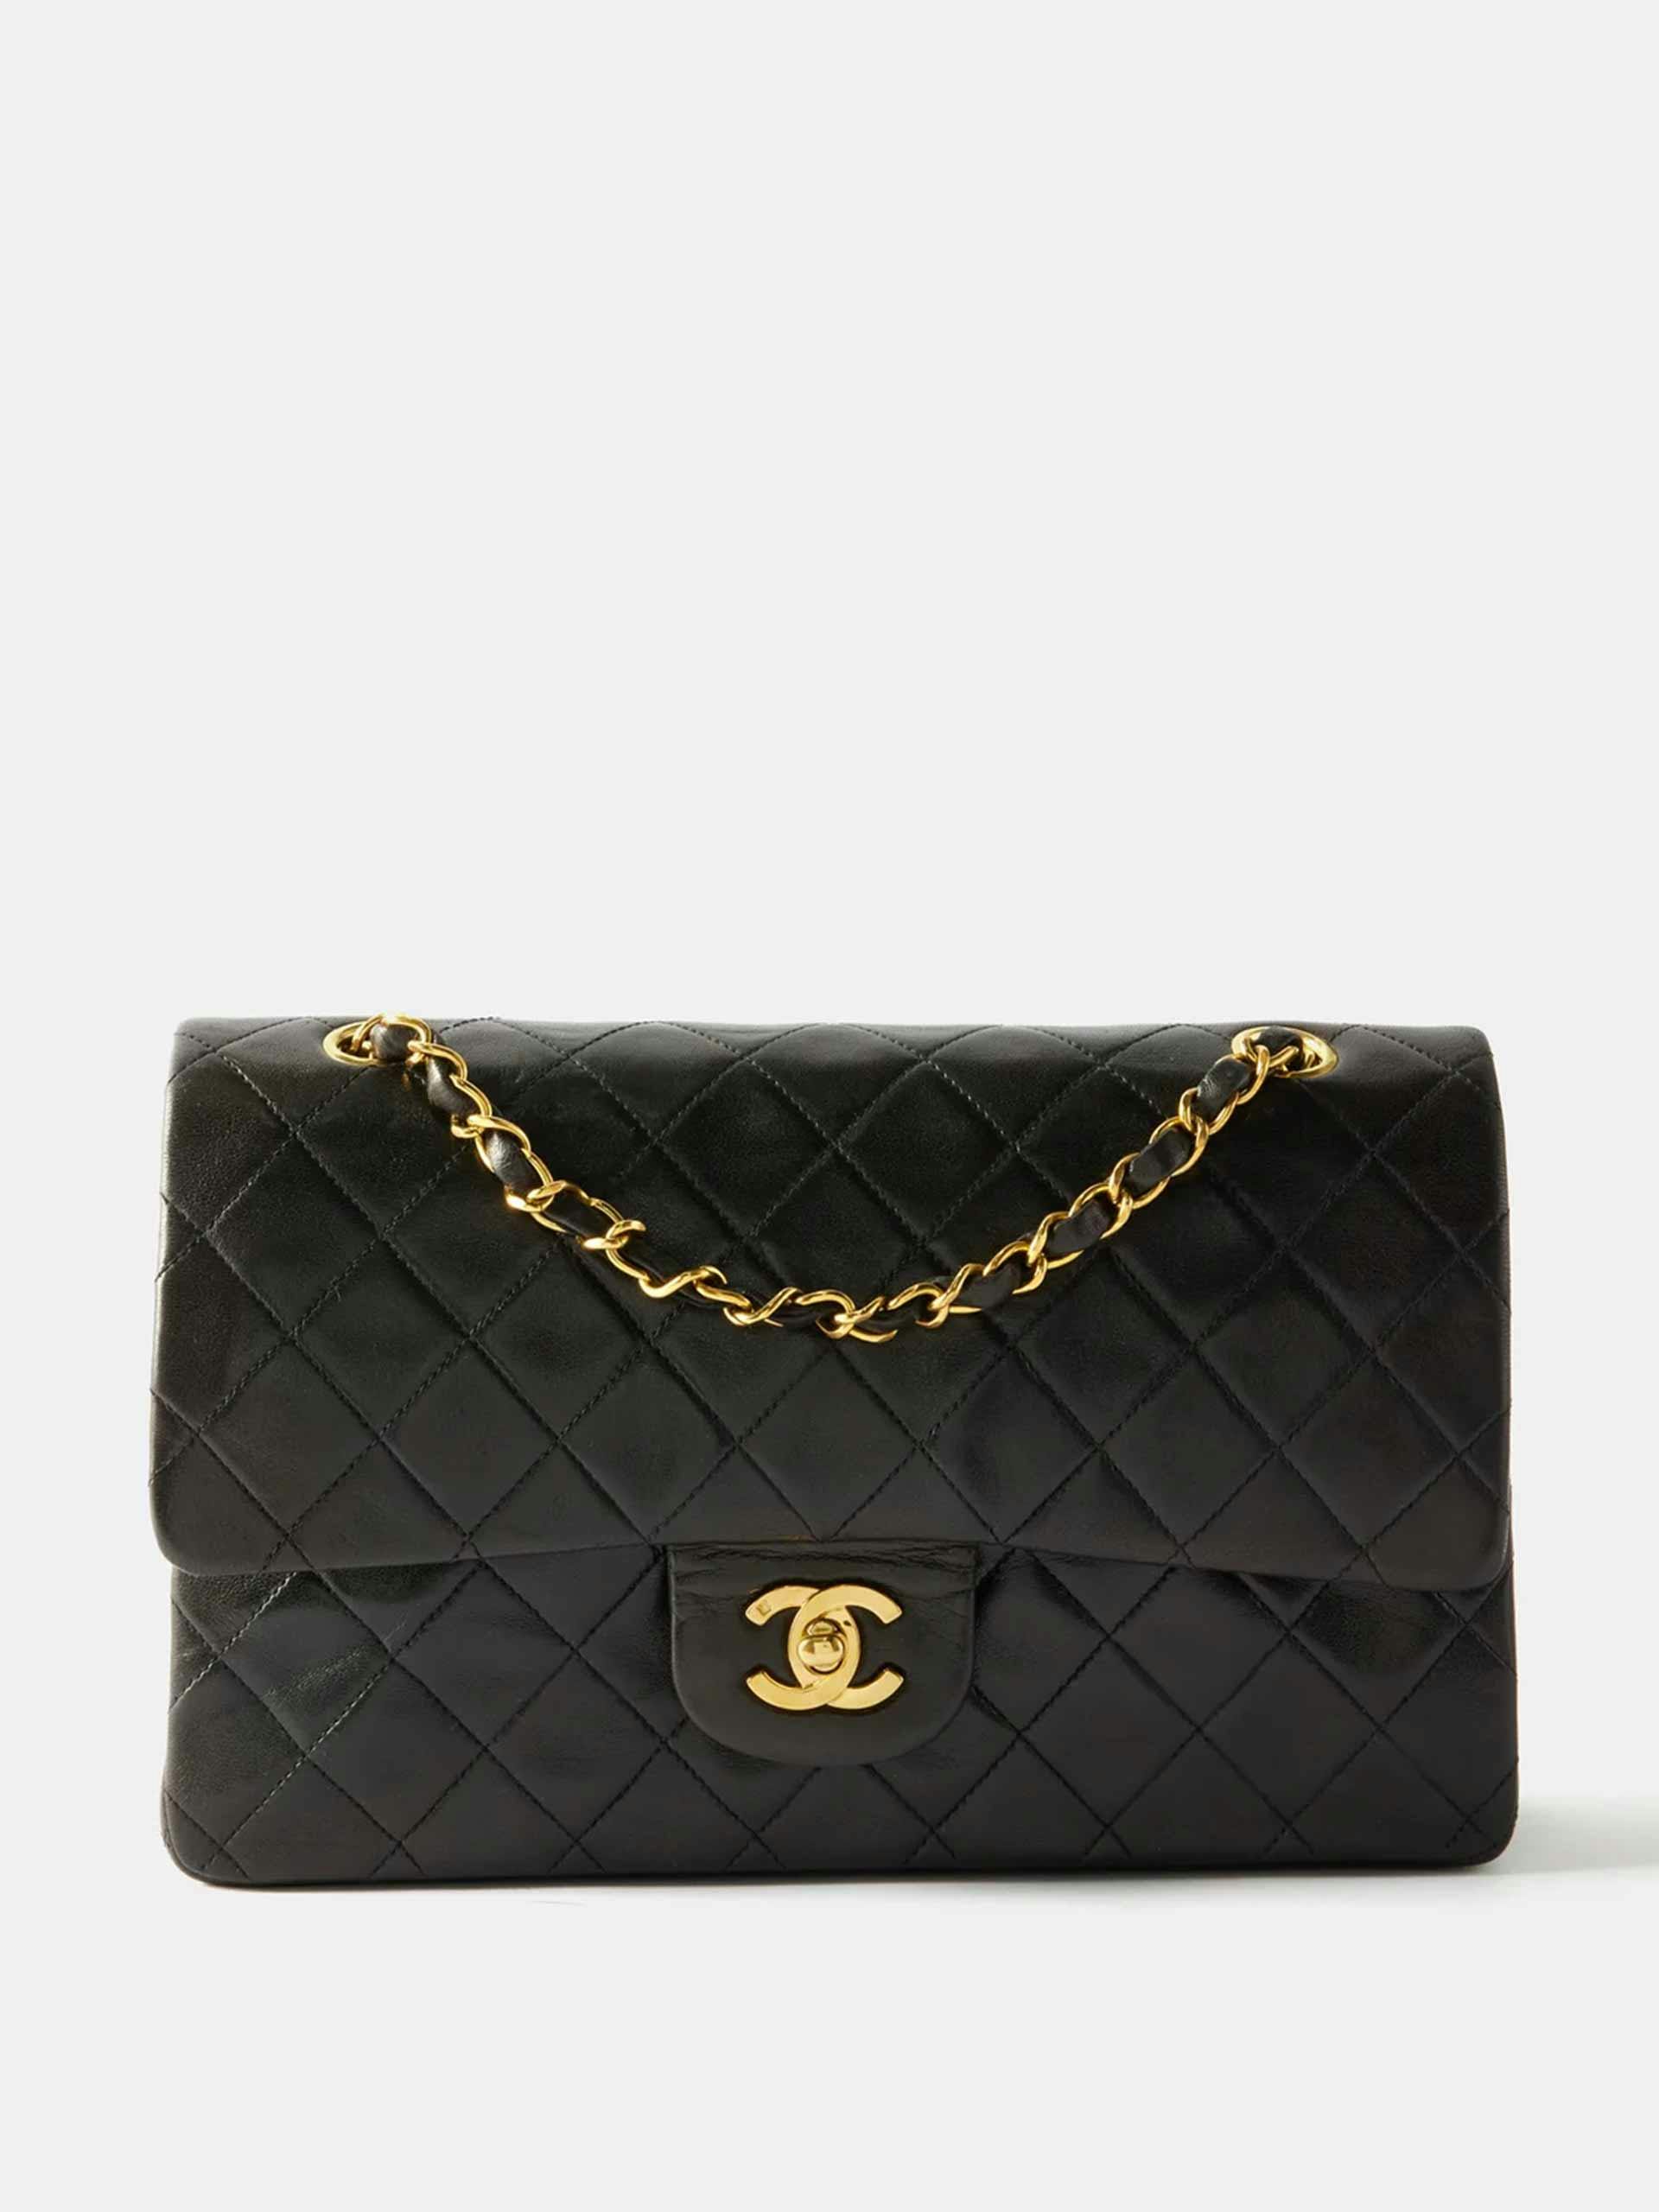 Chanel 2.55 medium shoulder bag